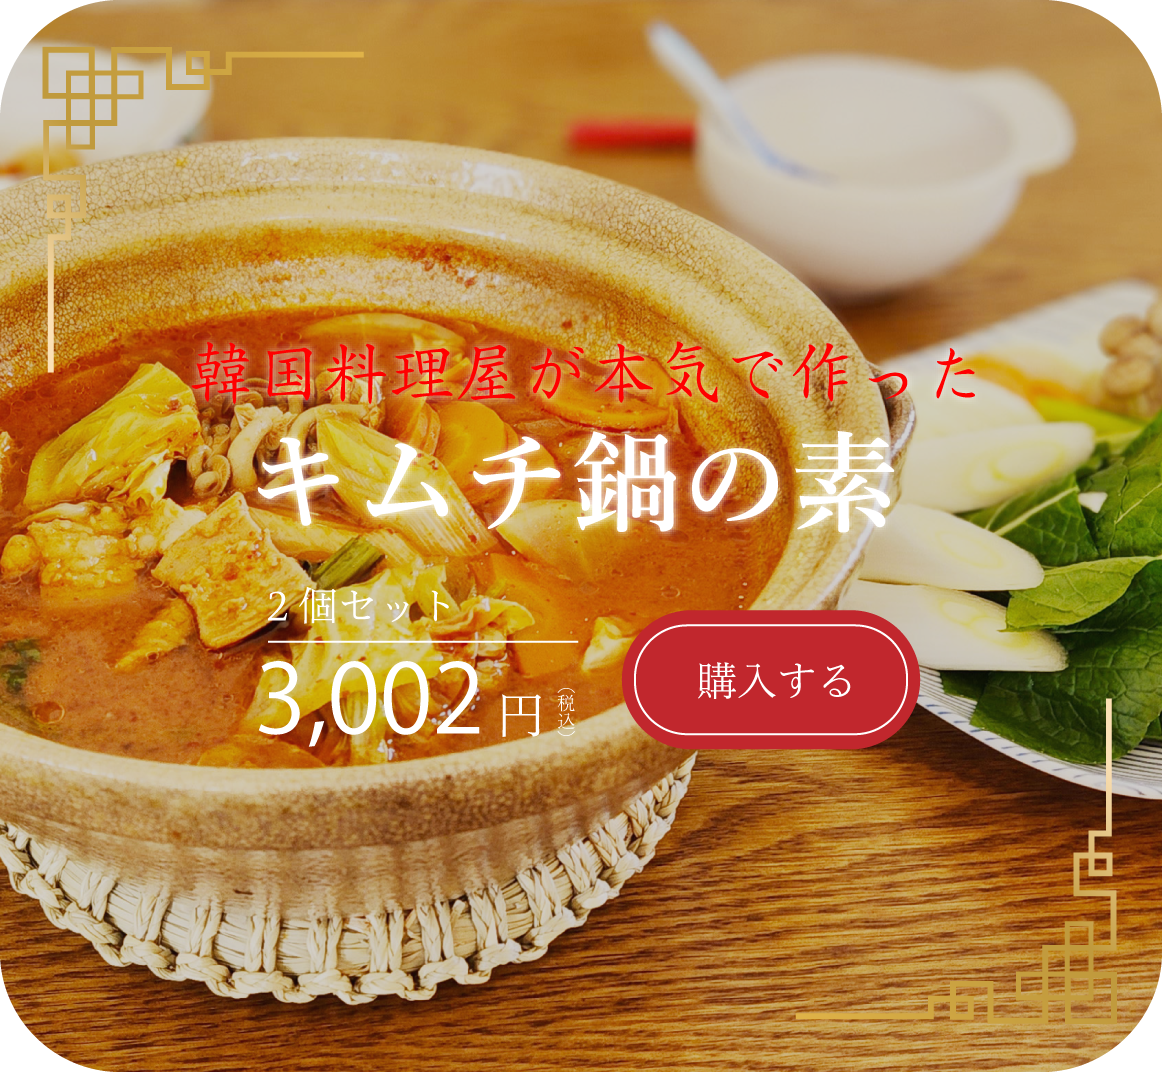 韓国料理屋が本気で作ったキムチ鍋の素2個セット3,002円(税込)